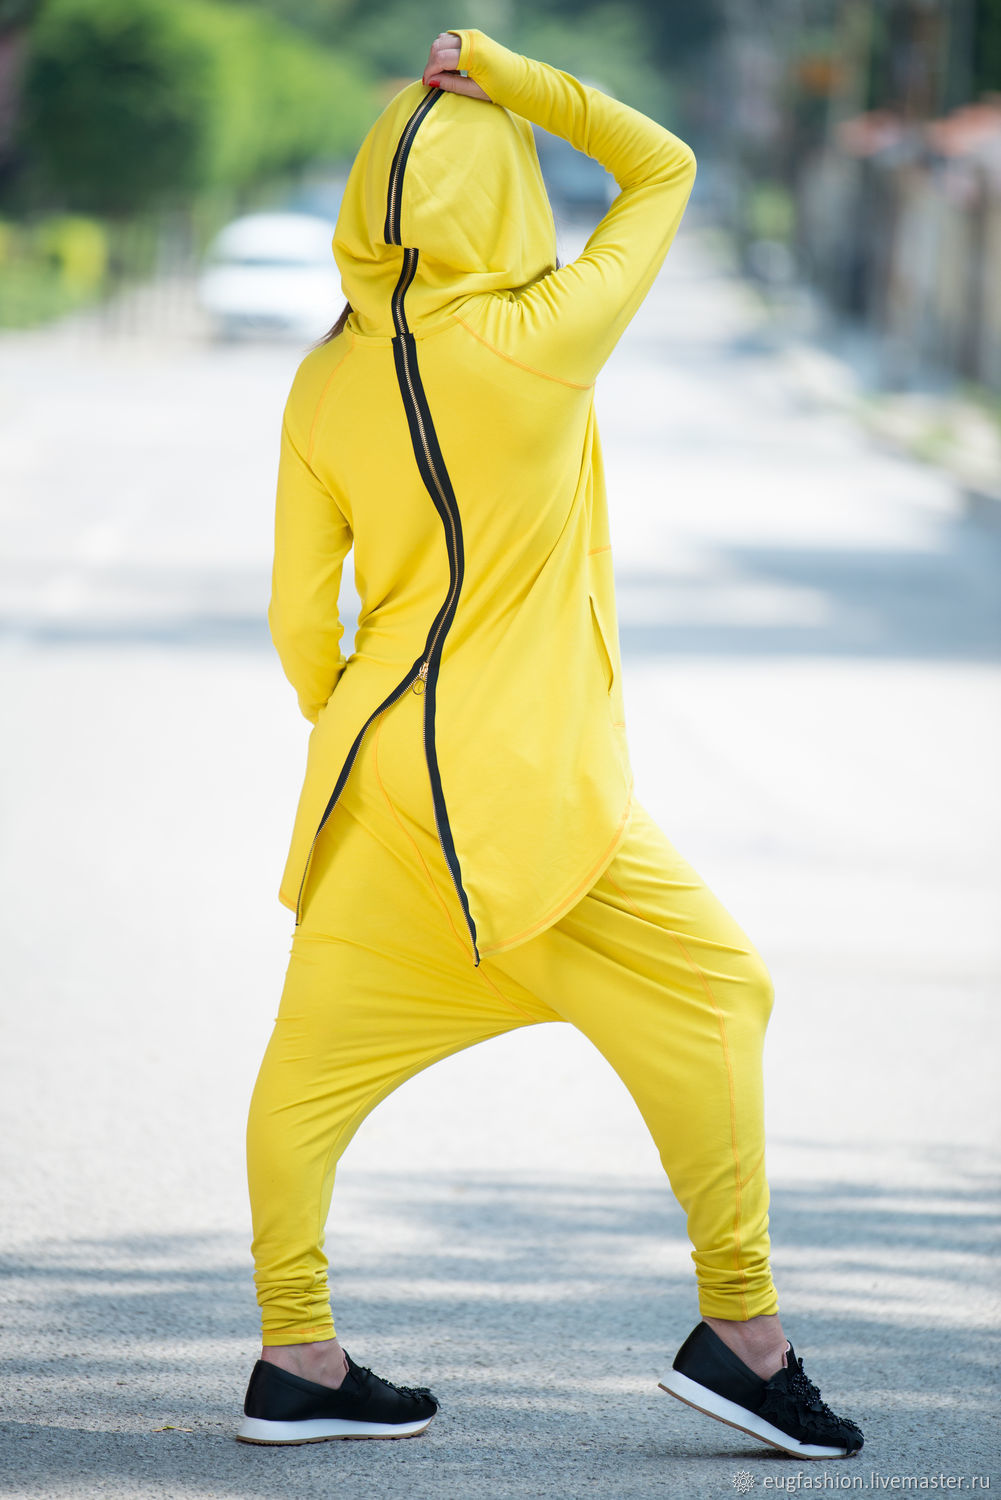 Спортивный костюм на молнии с капюшоном. Спортивный костюм адидас женский желтый. Желтый костюм адидас женский. Необычные спортивные костюмы. Спортивный костюм с капюшоном.